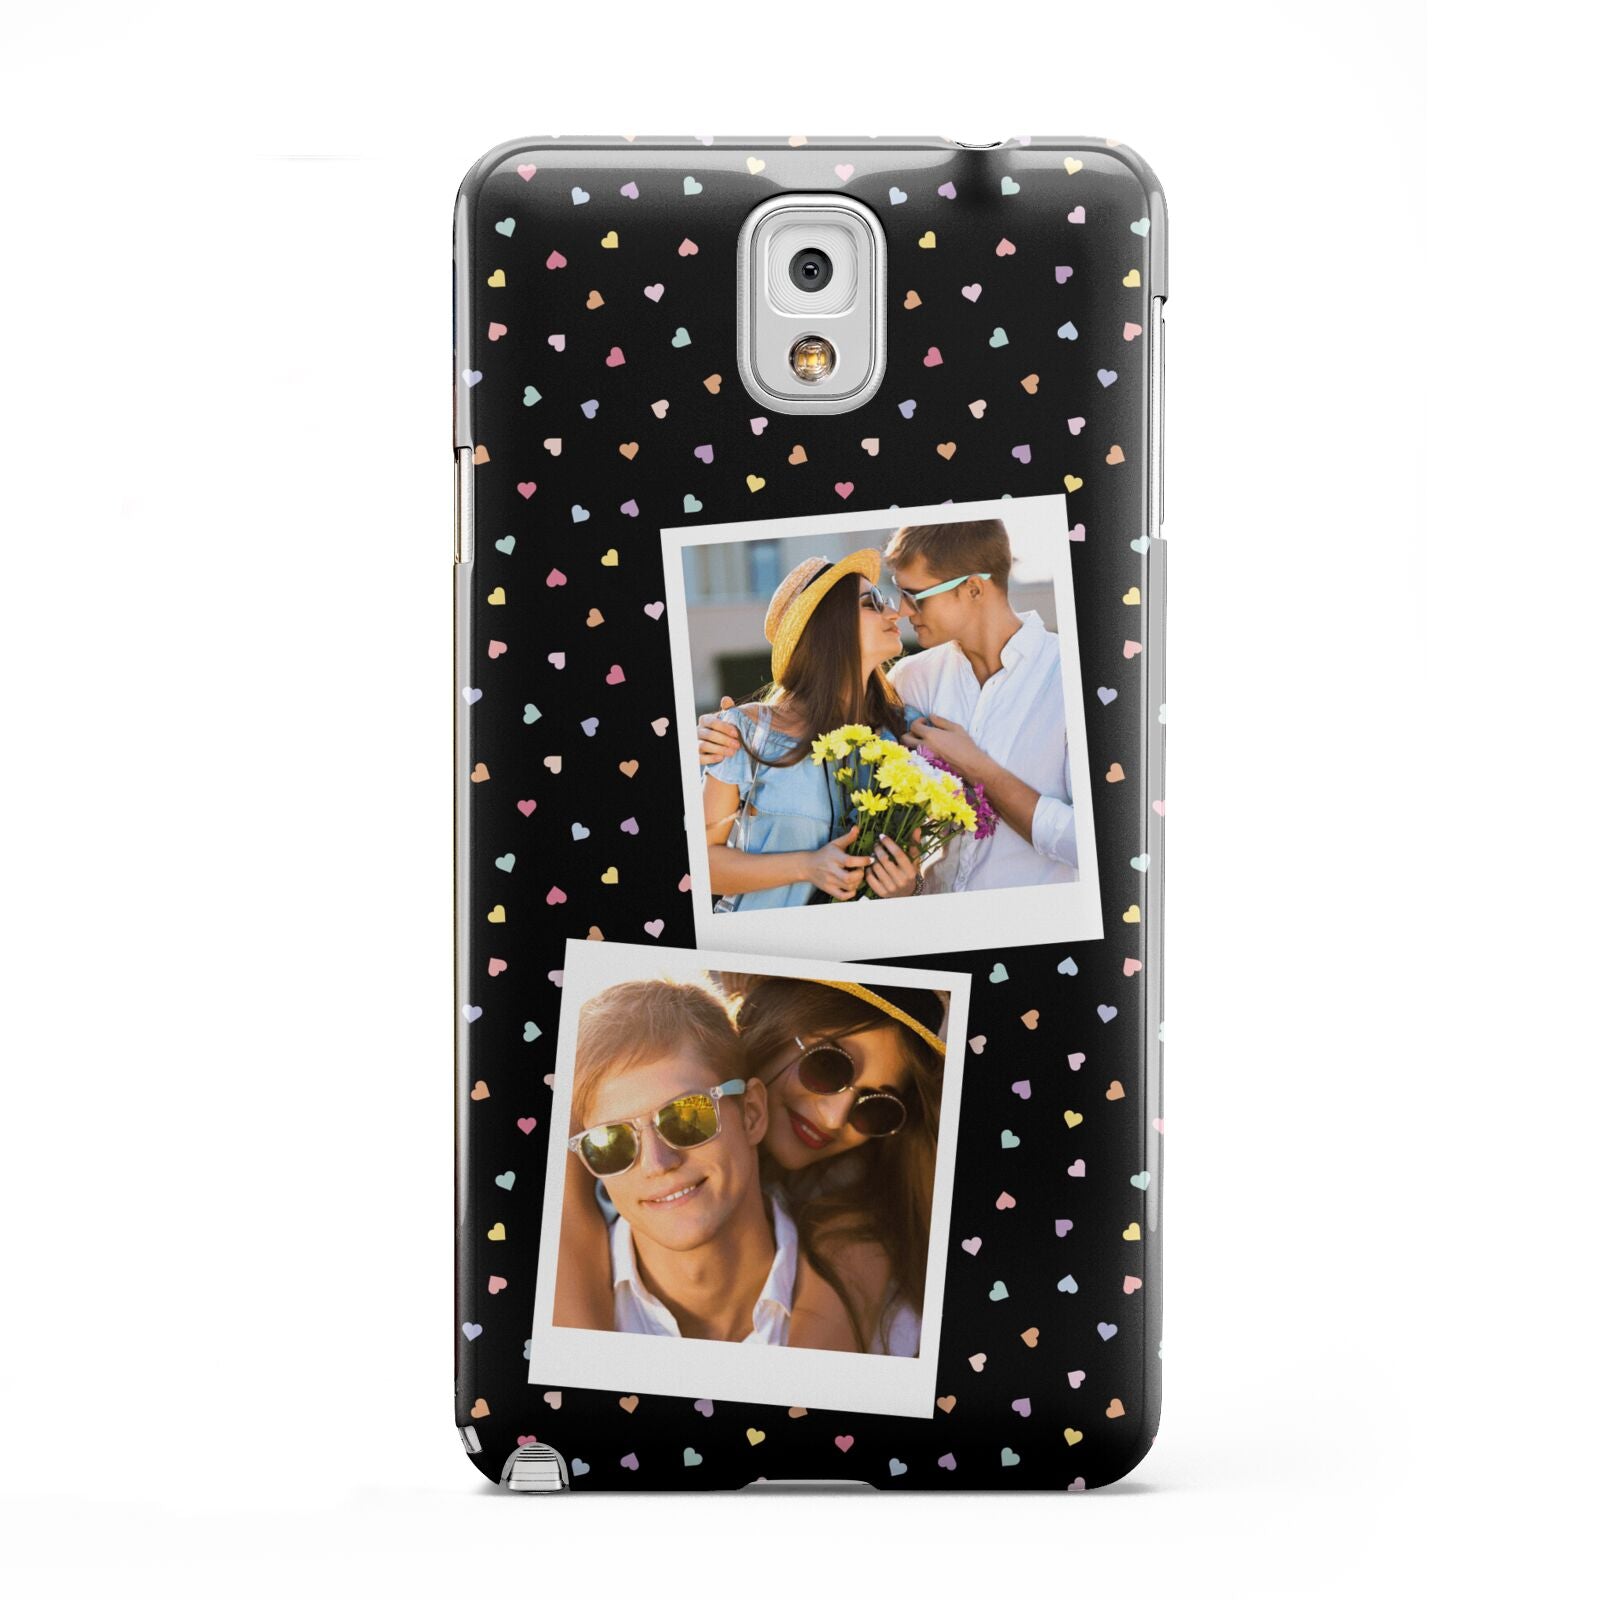 Confetti Heart Photo Samsung Galaxy Note 3 Case